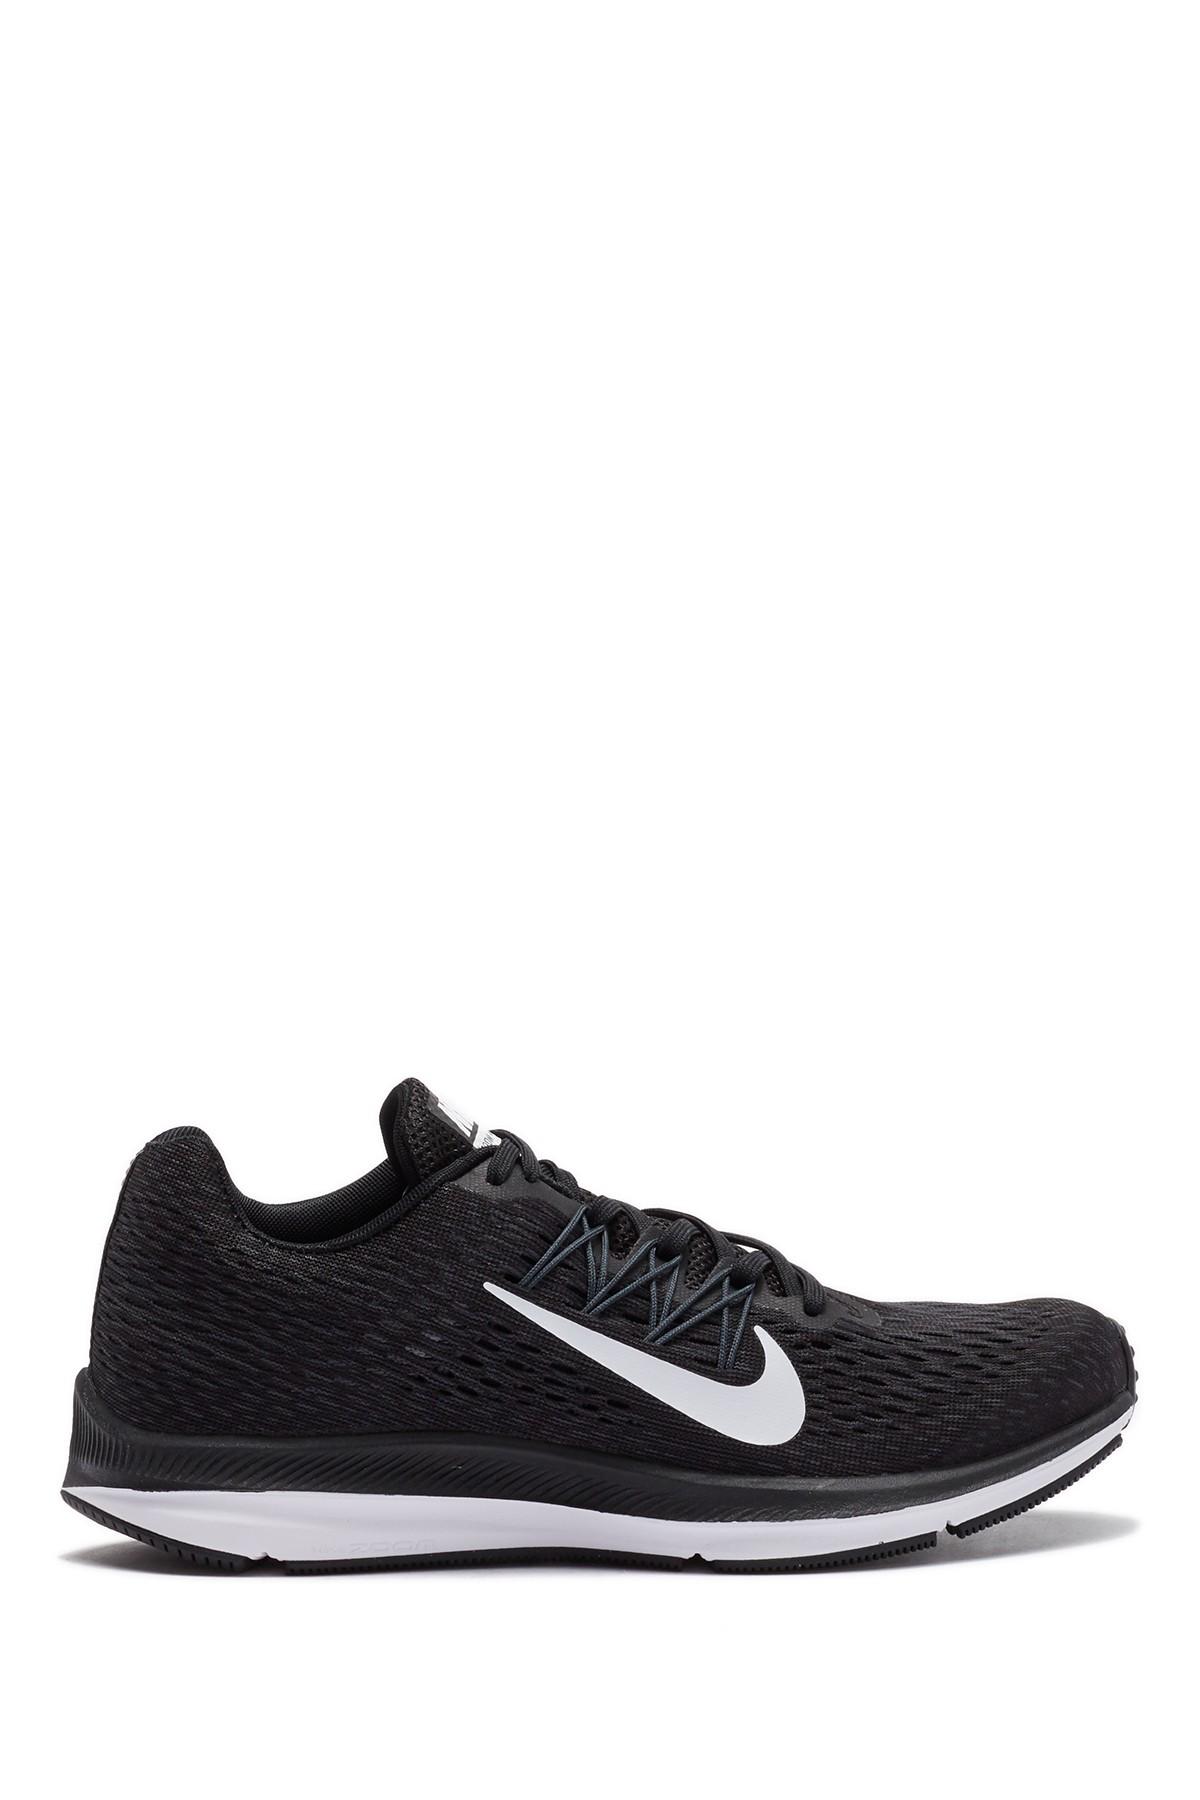 Nike Zoom Winflo 5 Athletic Sneaker - Wide Width in Black - Lyst